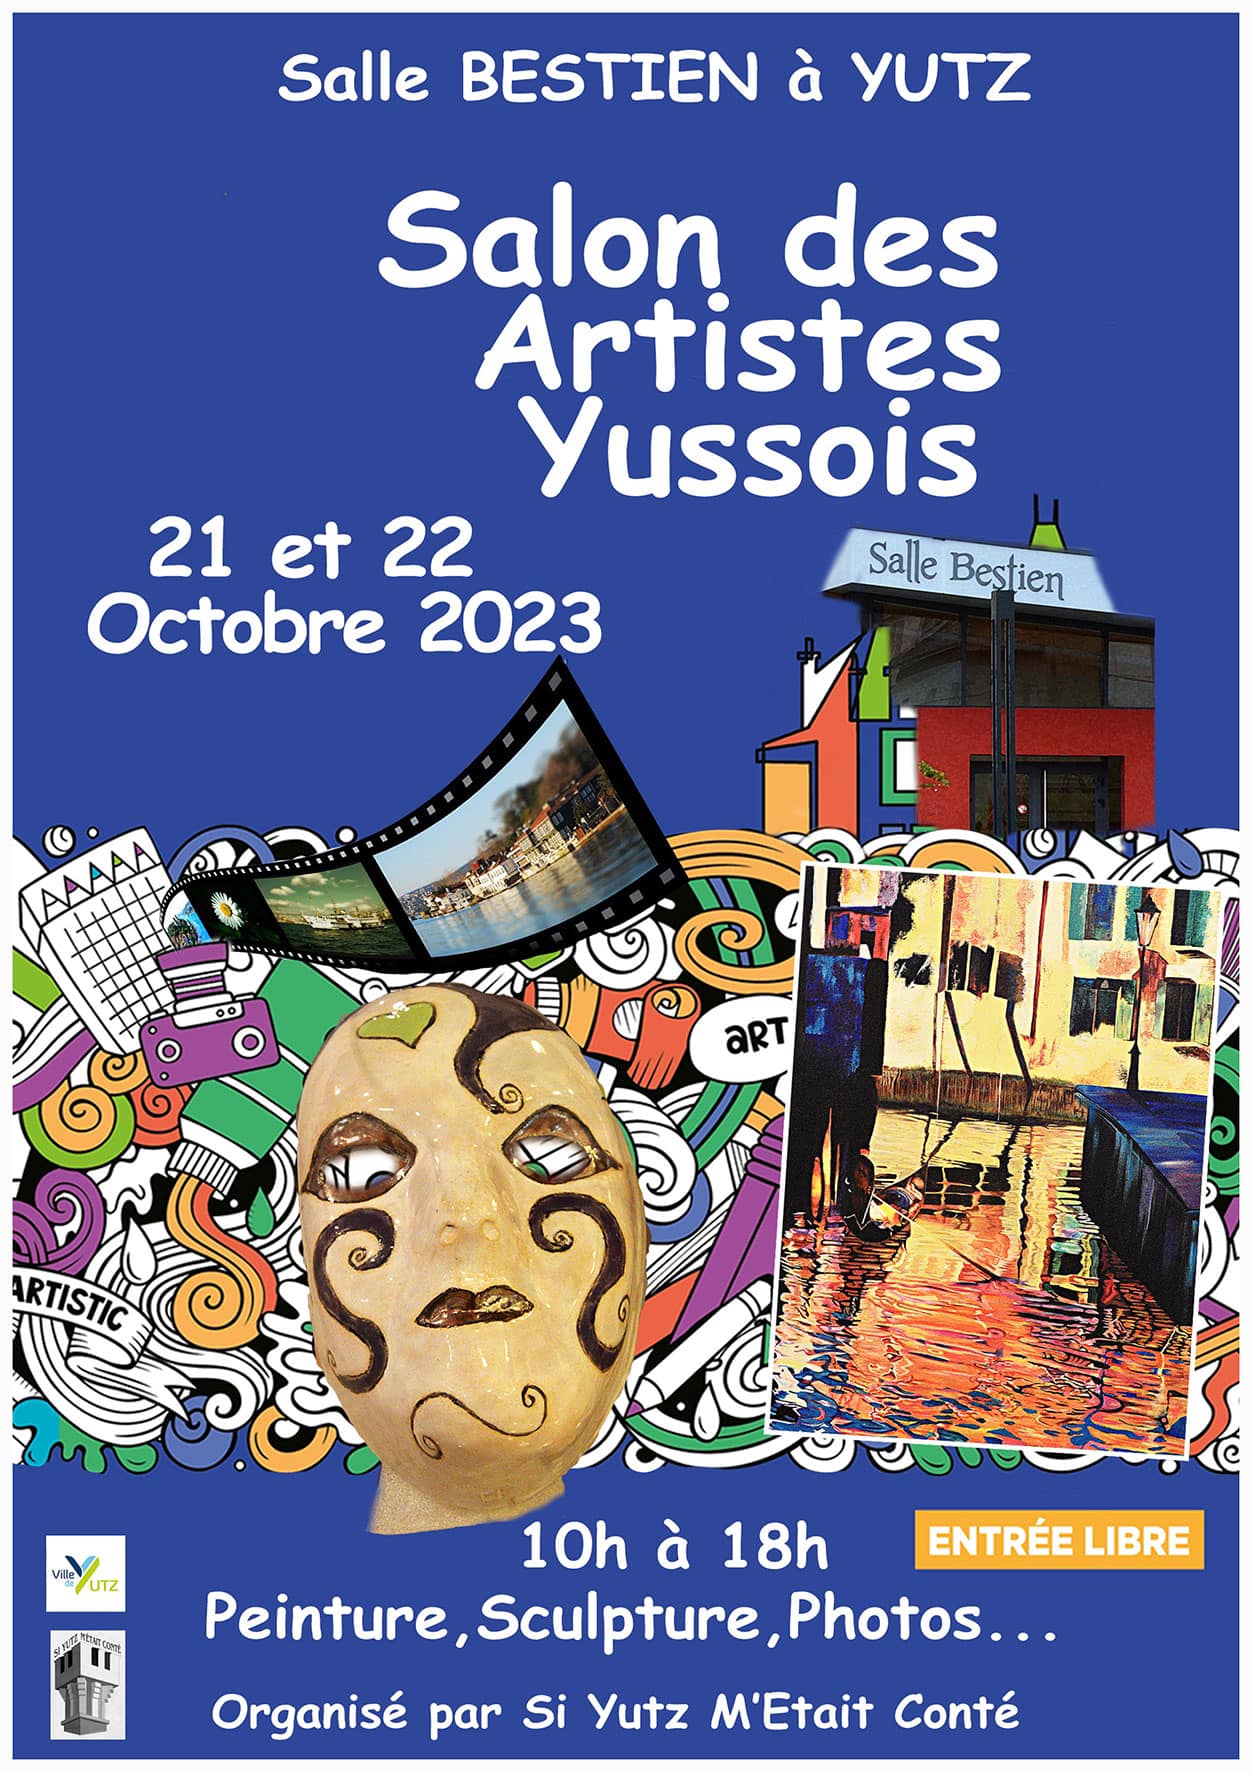 Salon des artistes yussois